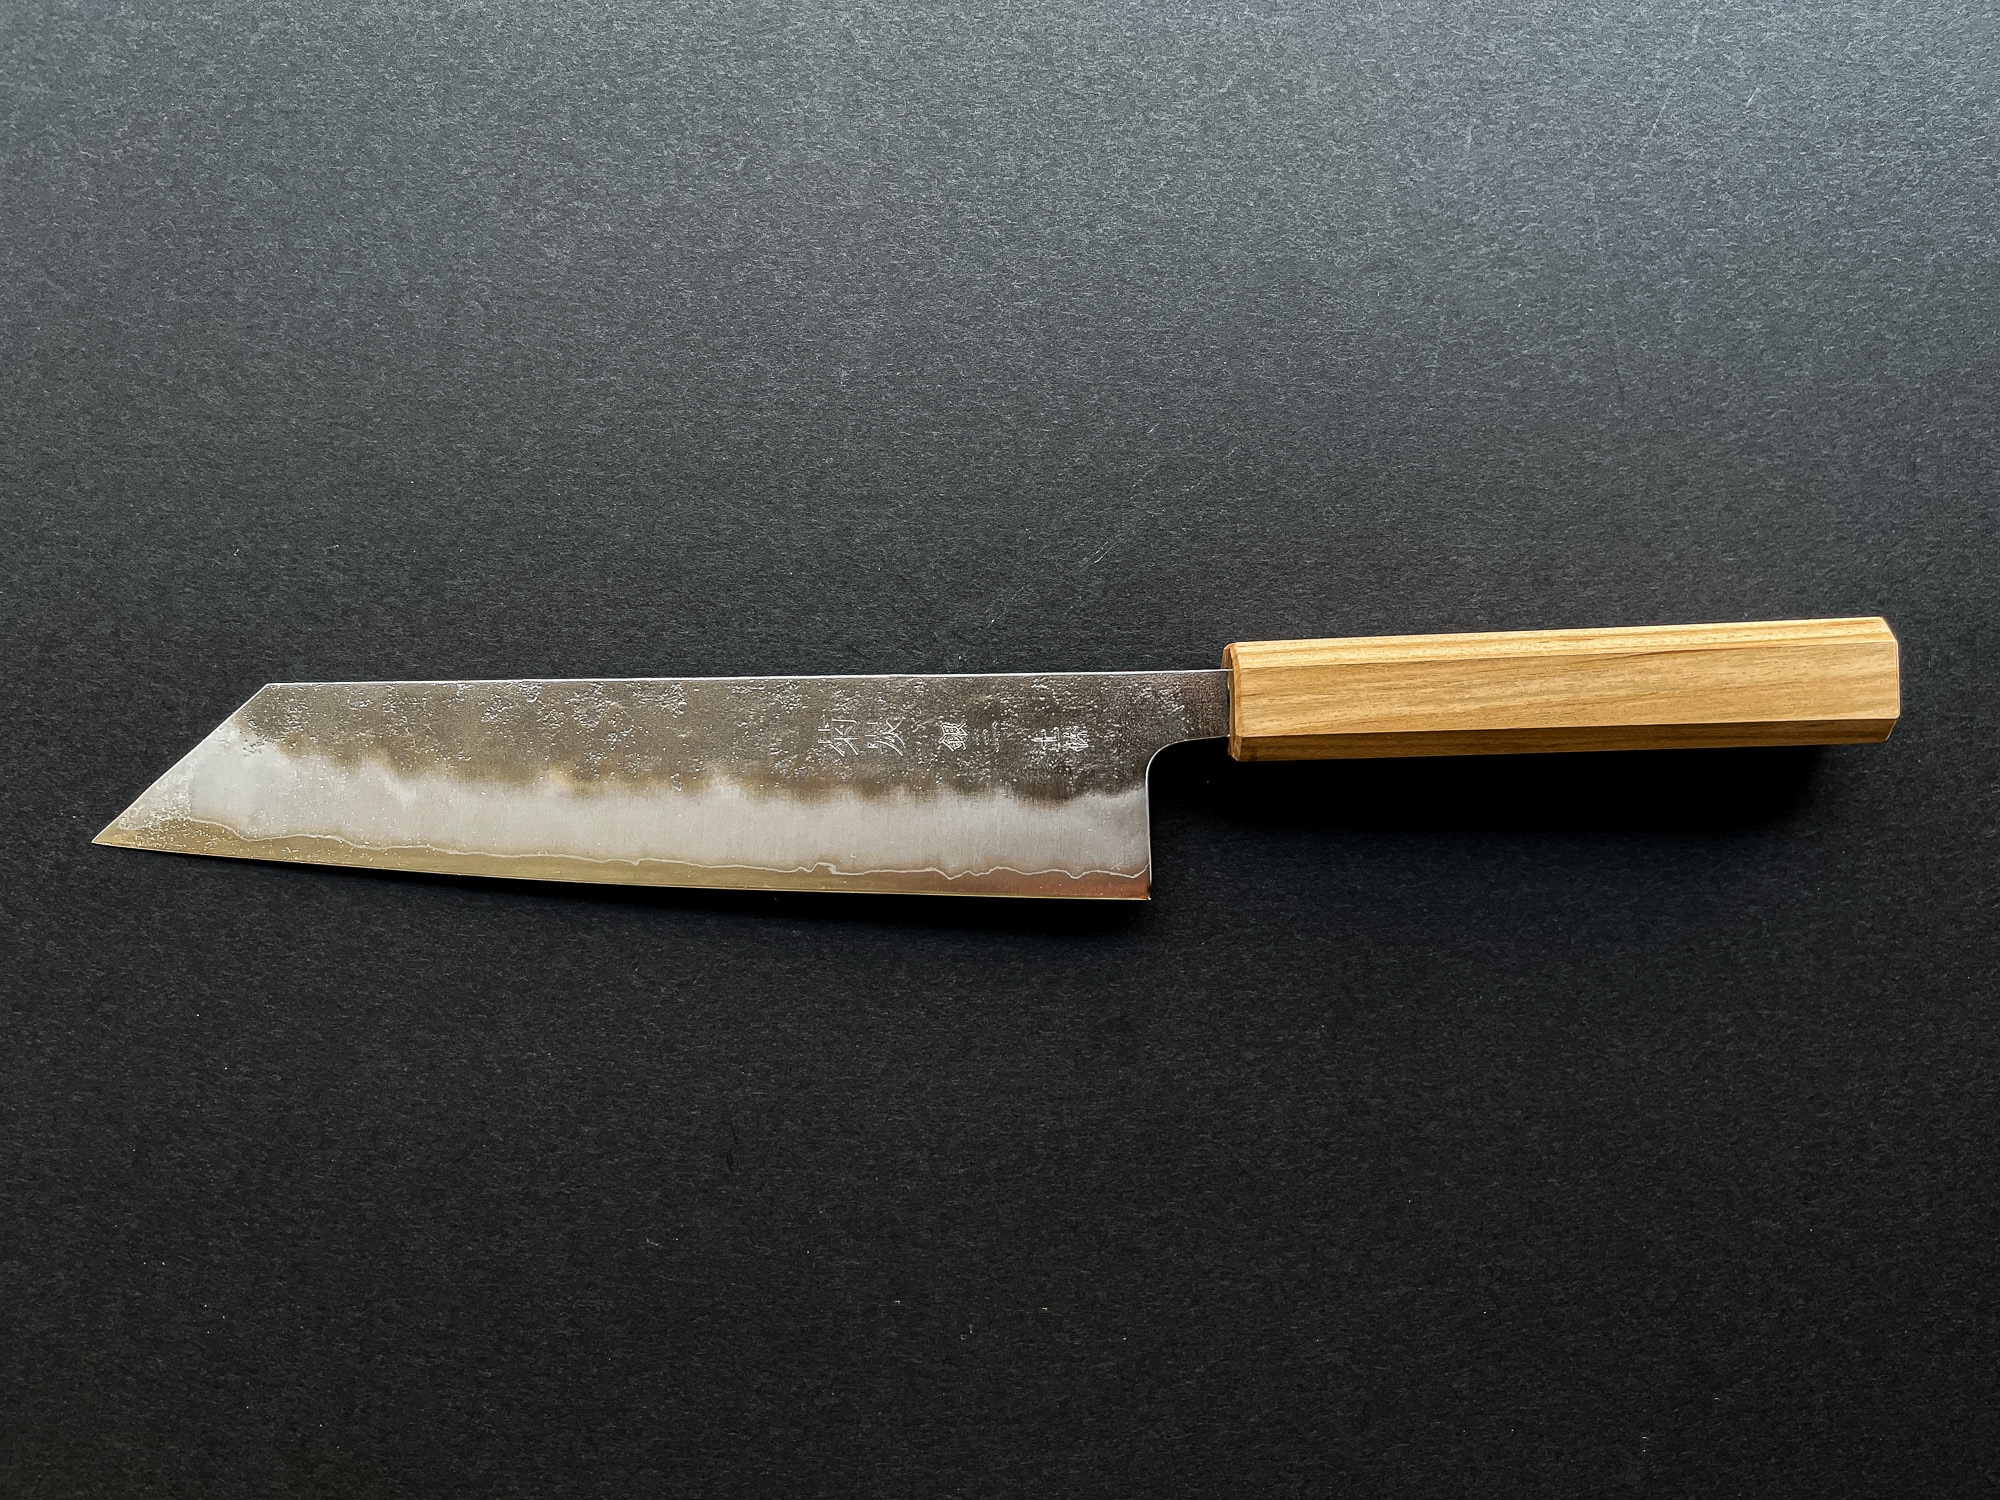 EANINNO Japanese Chef Knife 8 inch Gyuto Kiritsuke Kitchen Knife